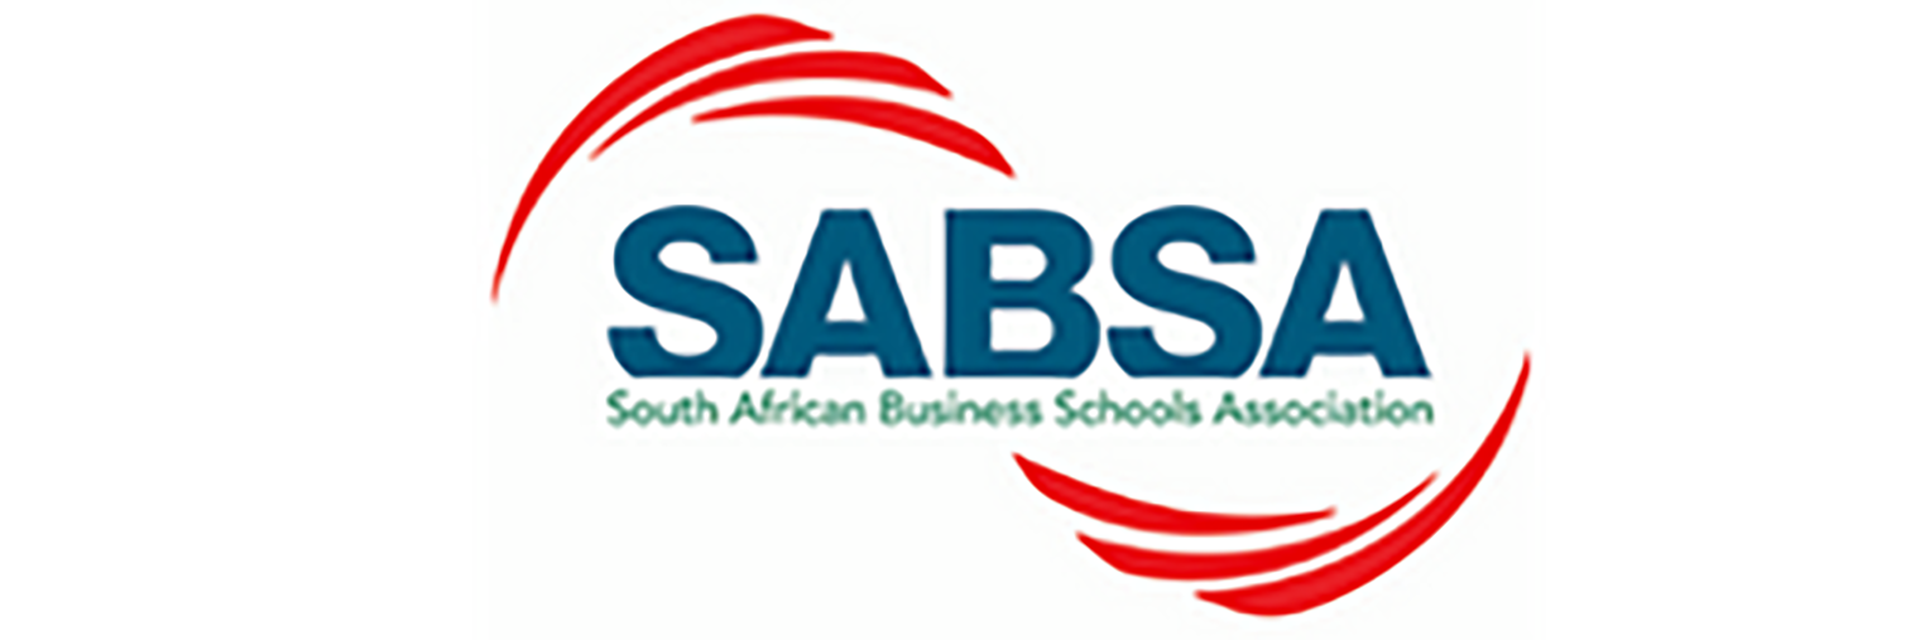 South African Business Schools Association Sabsa